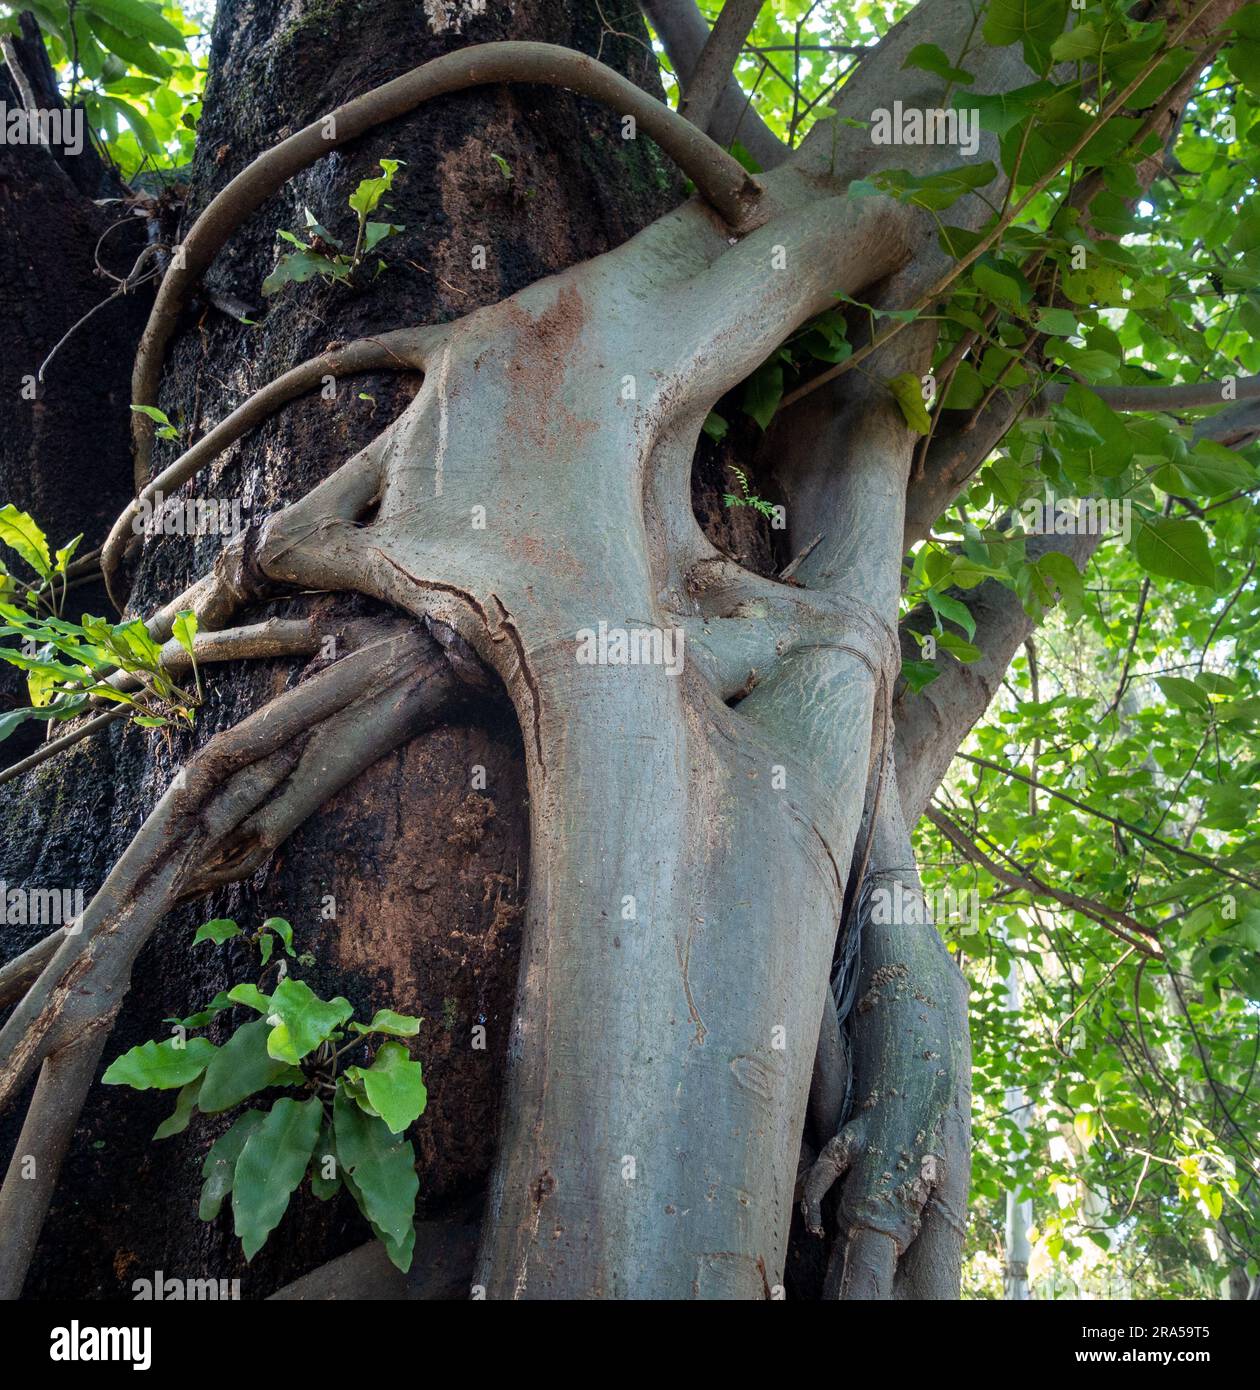 Albero di fichi Strangler. Questo albero si avvolge intorno e cresce fino ad un albero ospite, alla fine inglobando e uccidendo l'ospite. Uttarakhand India. Foto Stock